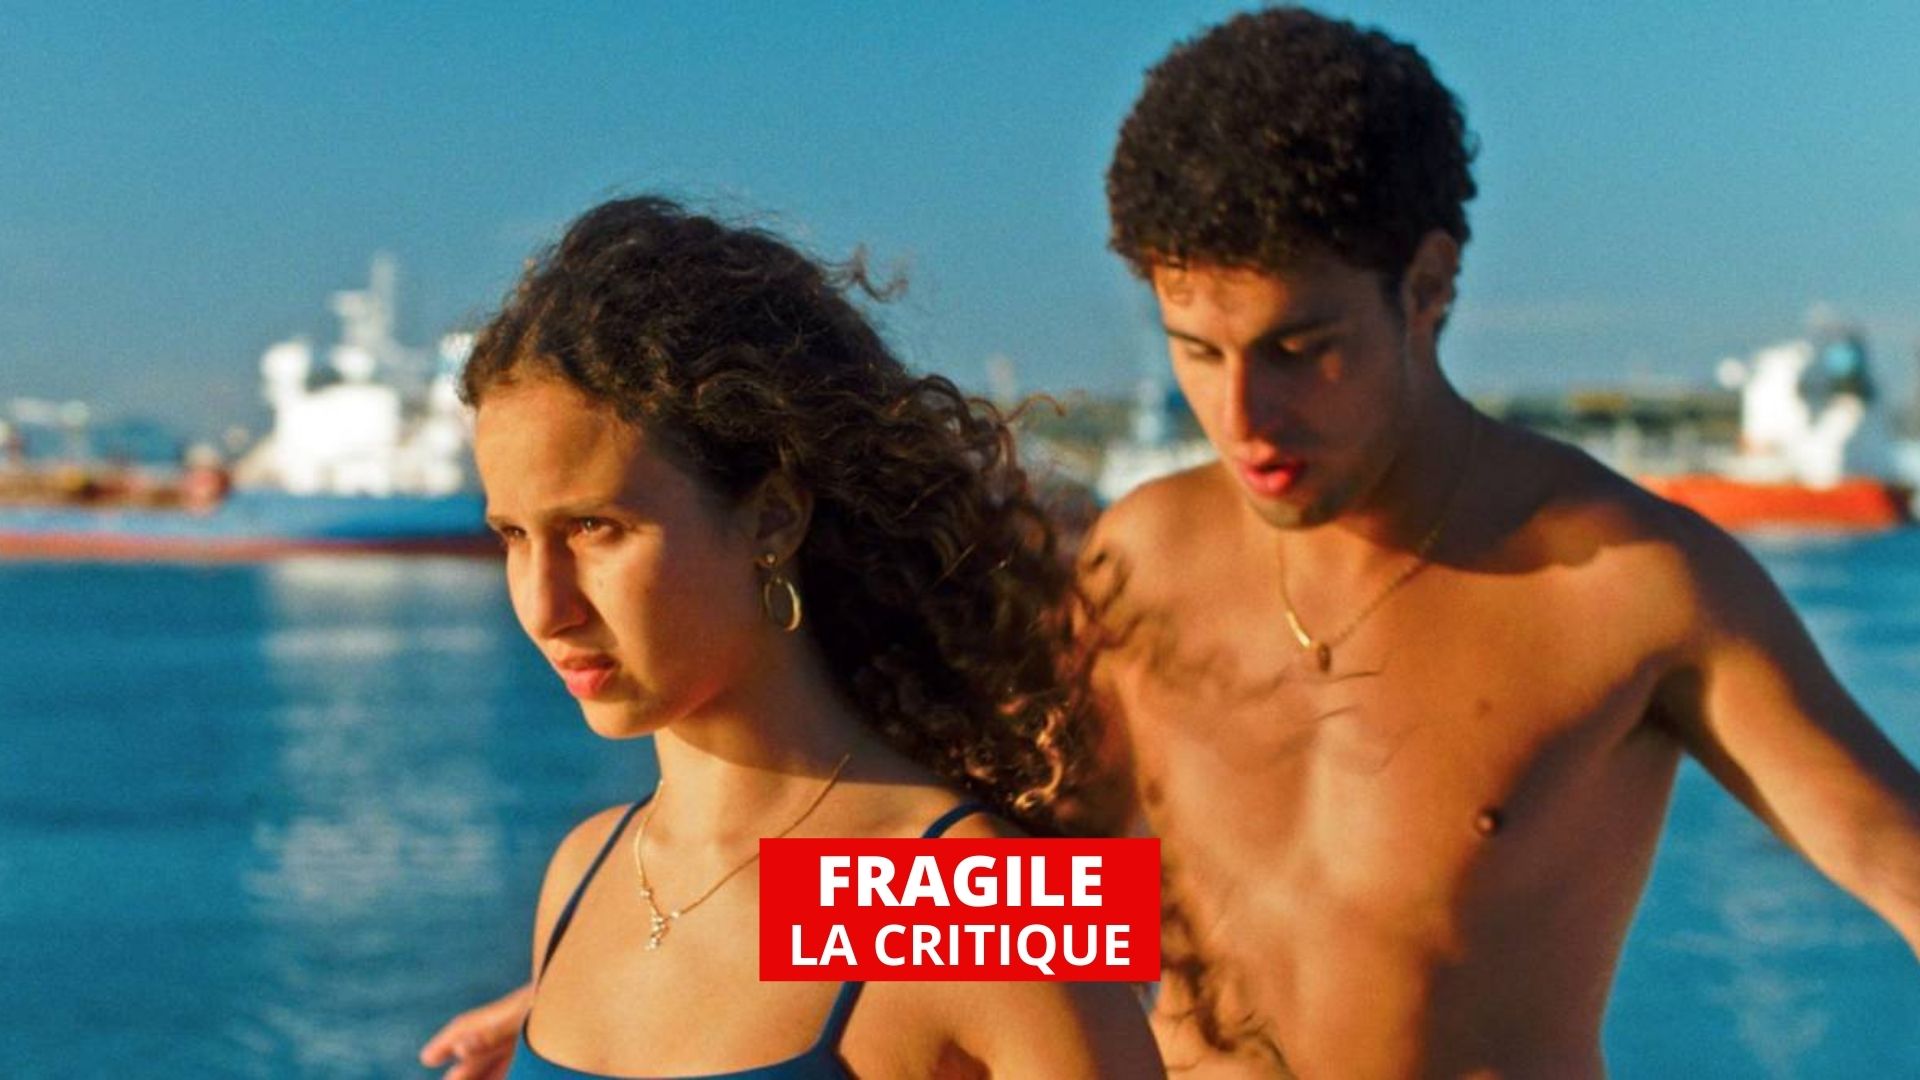 Fragile : le temps de l'amour, des copains et de l'aventure